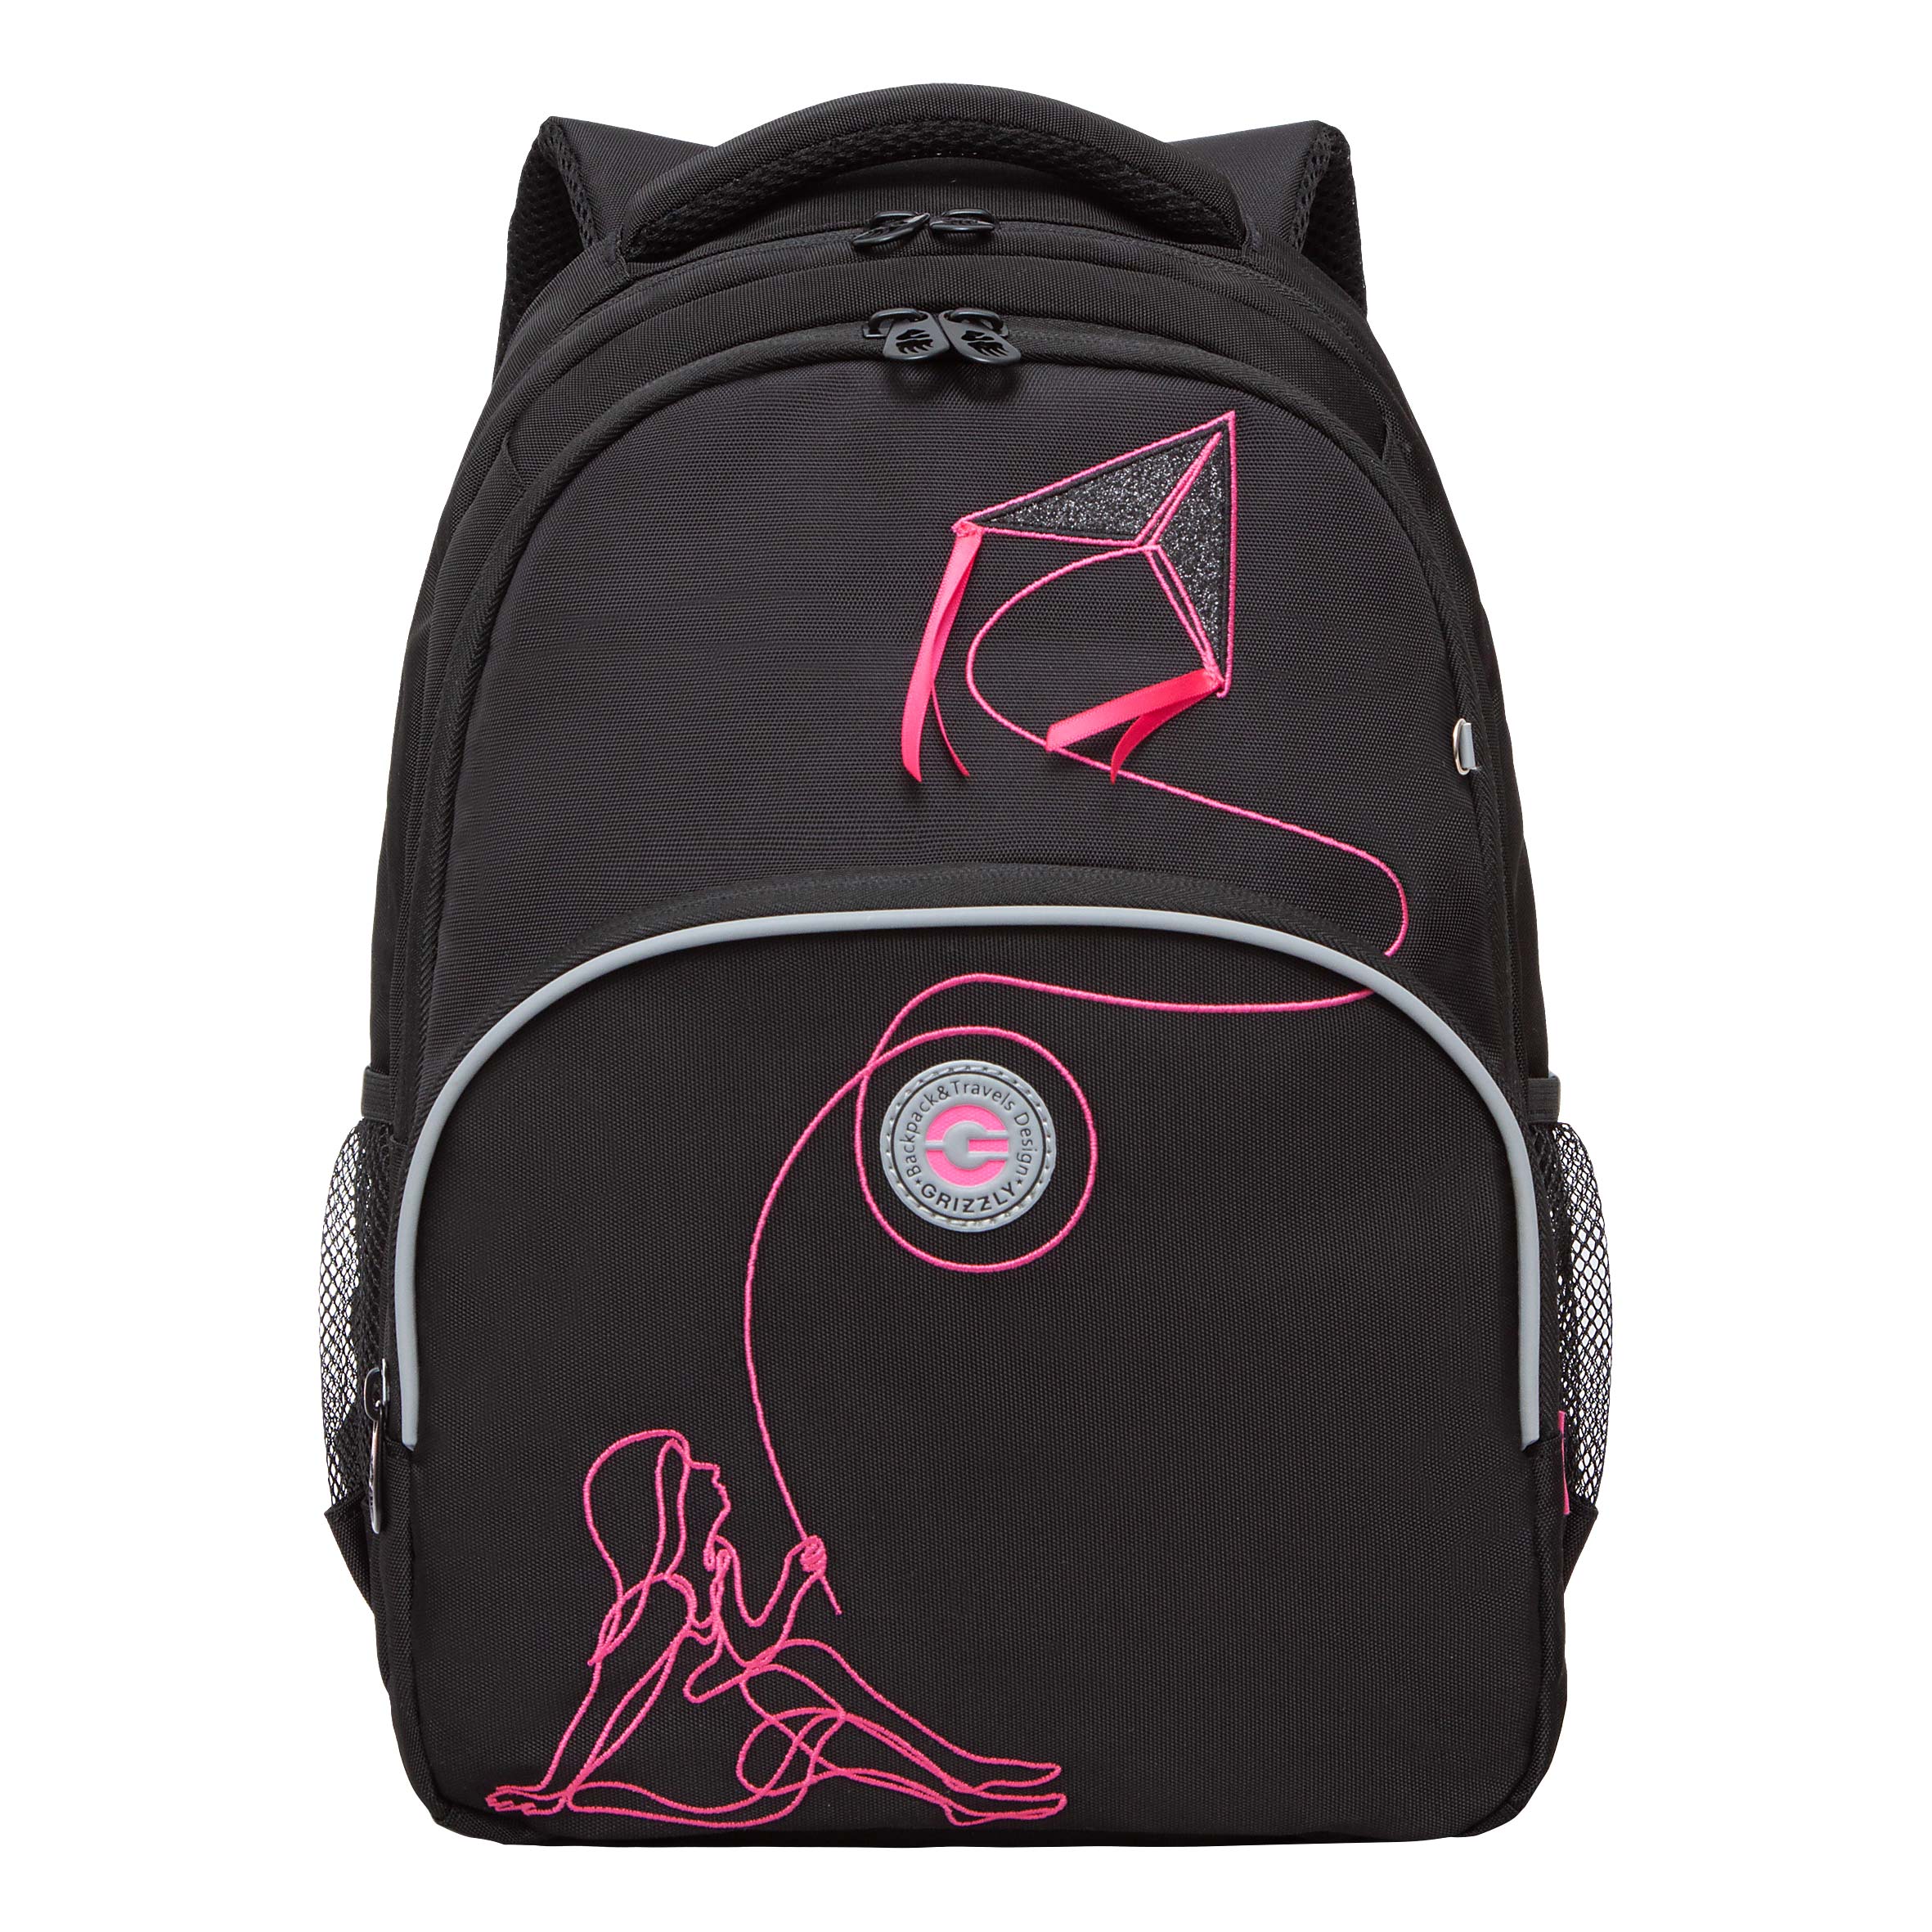 Рюкзак Grizzly школьный для девочки RG-360-8 1 черный - фуксия